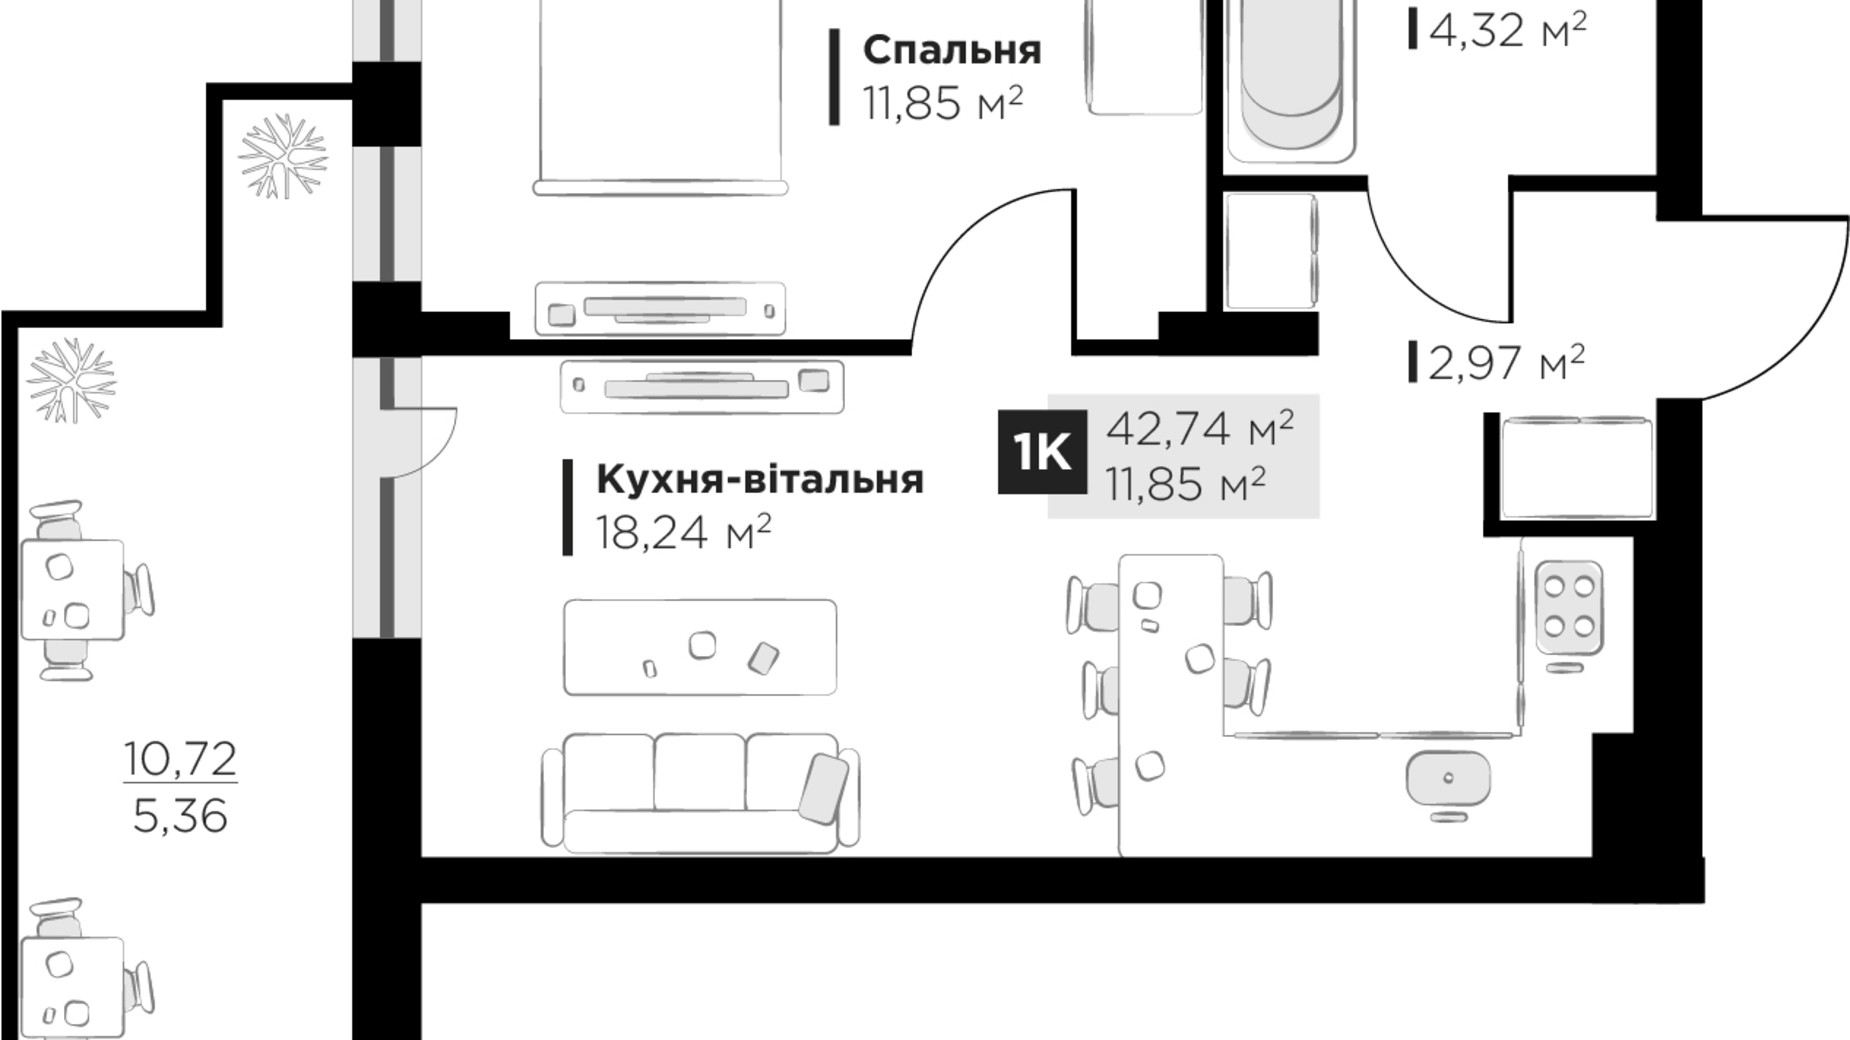 Планировка 1-комнатной квартиры в ЖК PERFECT LIFE 42.74 м², фото 663013